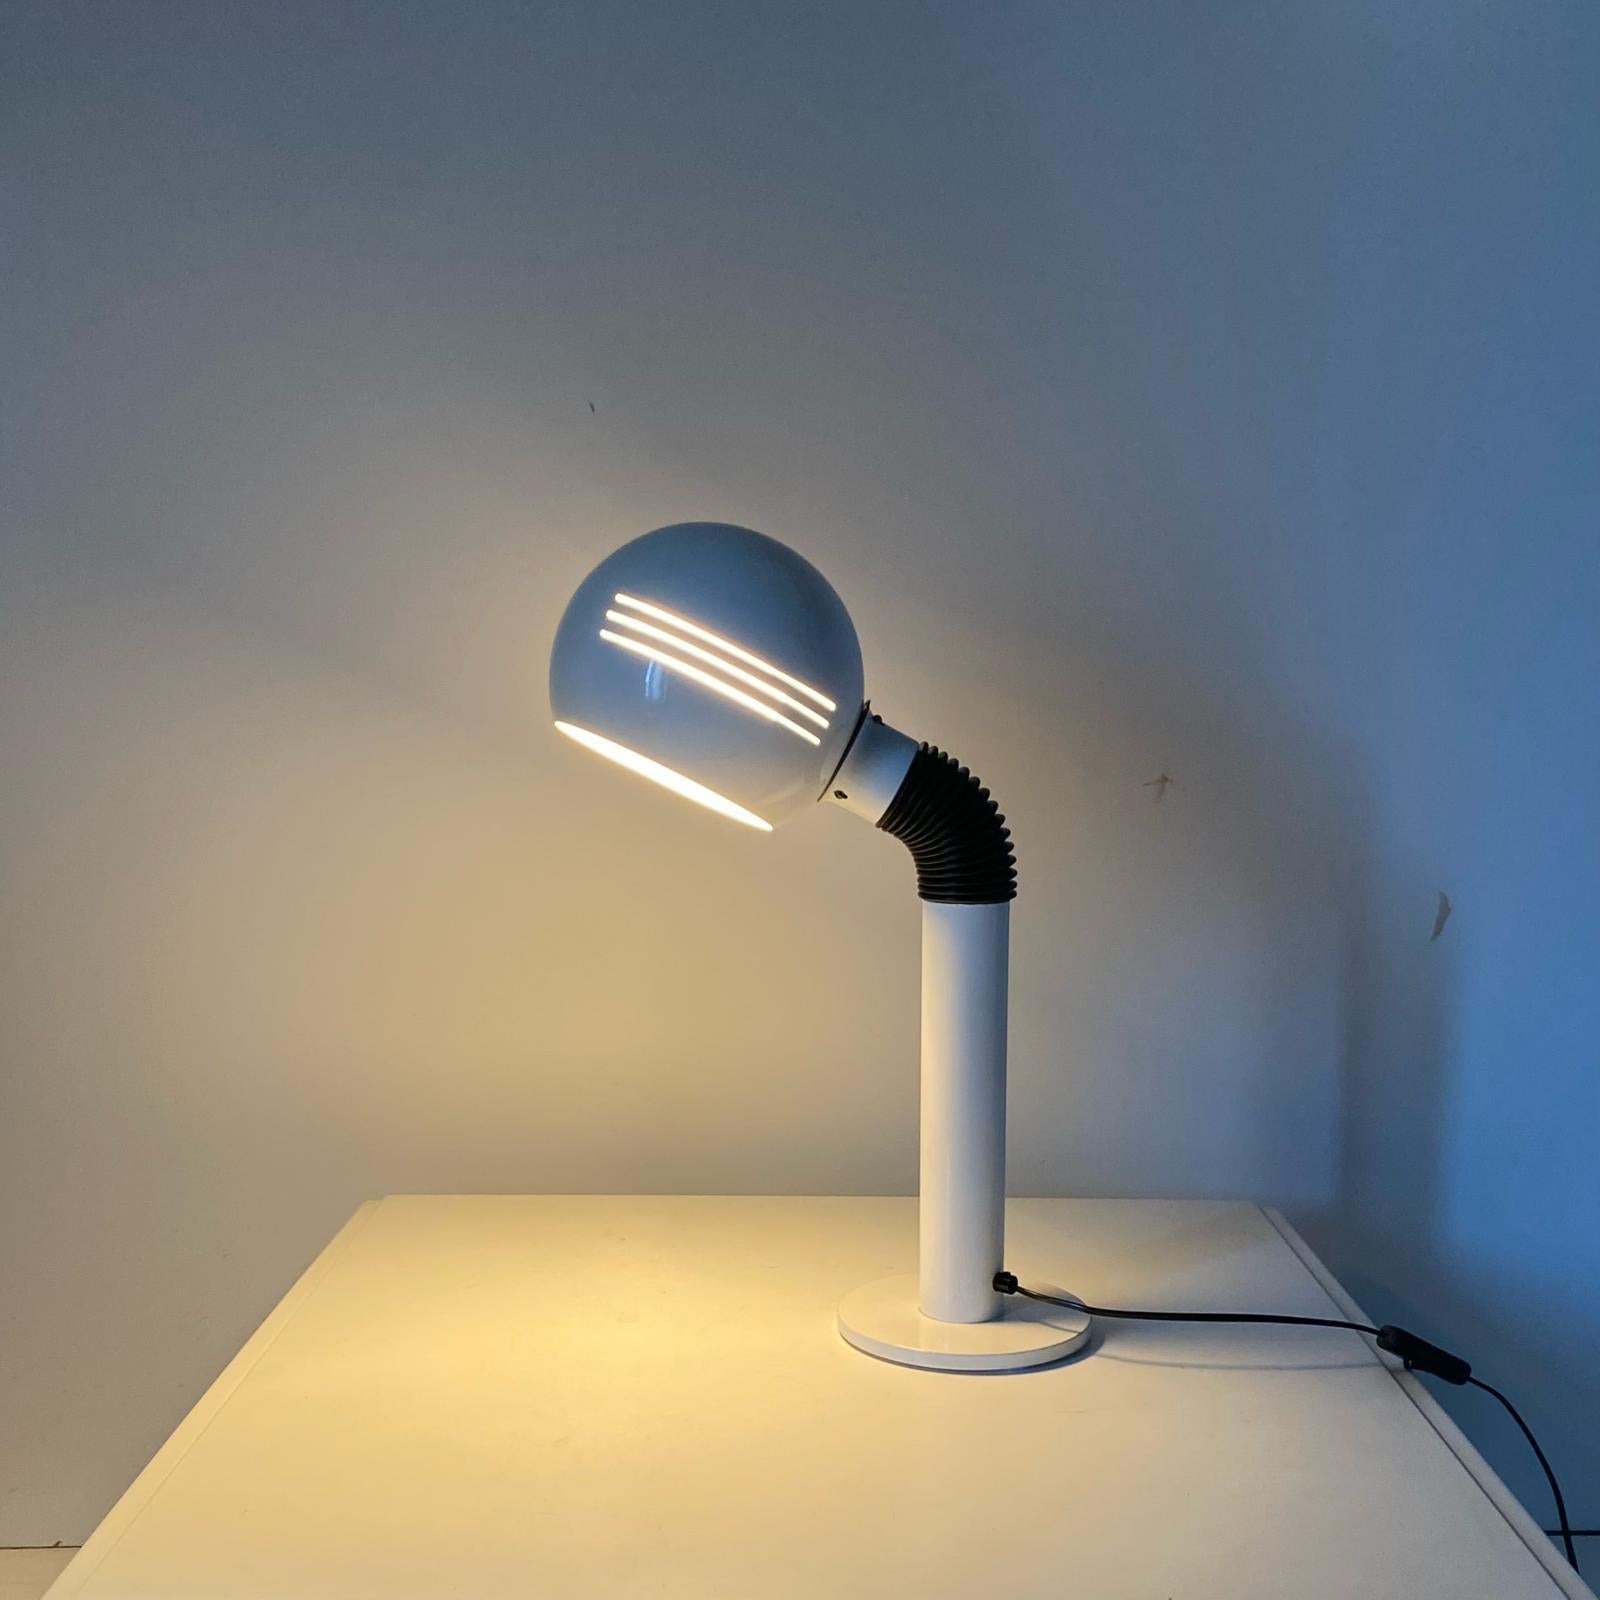 Lampe de table flexible blanche de l'ère spatiale fabriquée par Zonca, Italie, années 1970.

Lampe de table flexible et ajustable avec structure blanche. Révisé et fonctionnant parfaitement.  En très bon état avec quelques signes du temps.

Diamètre